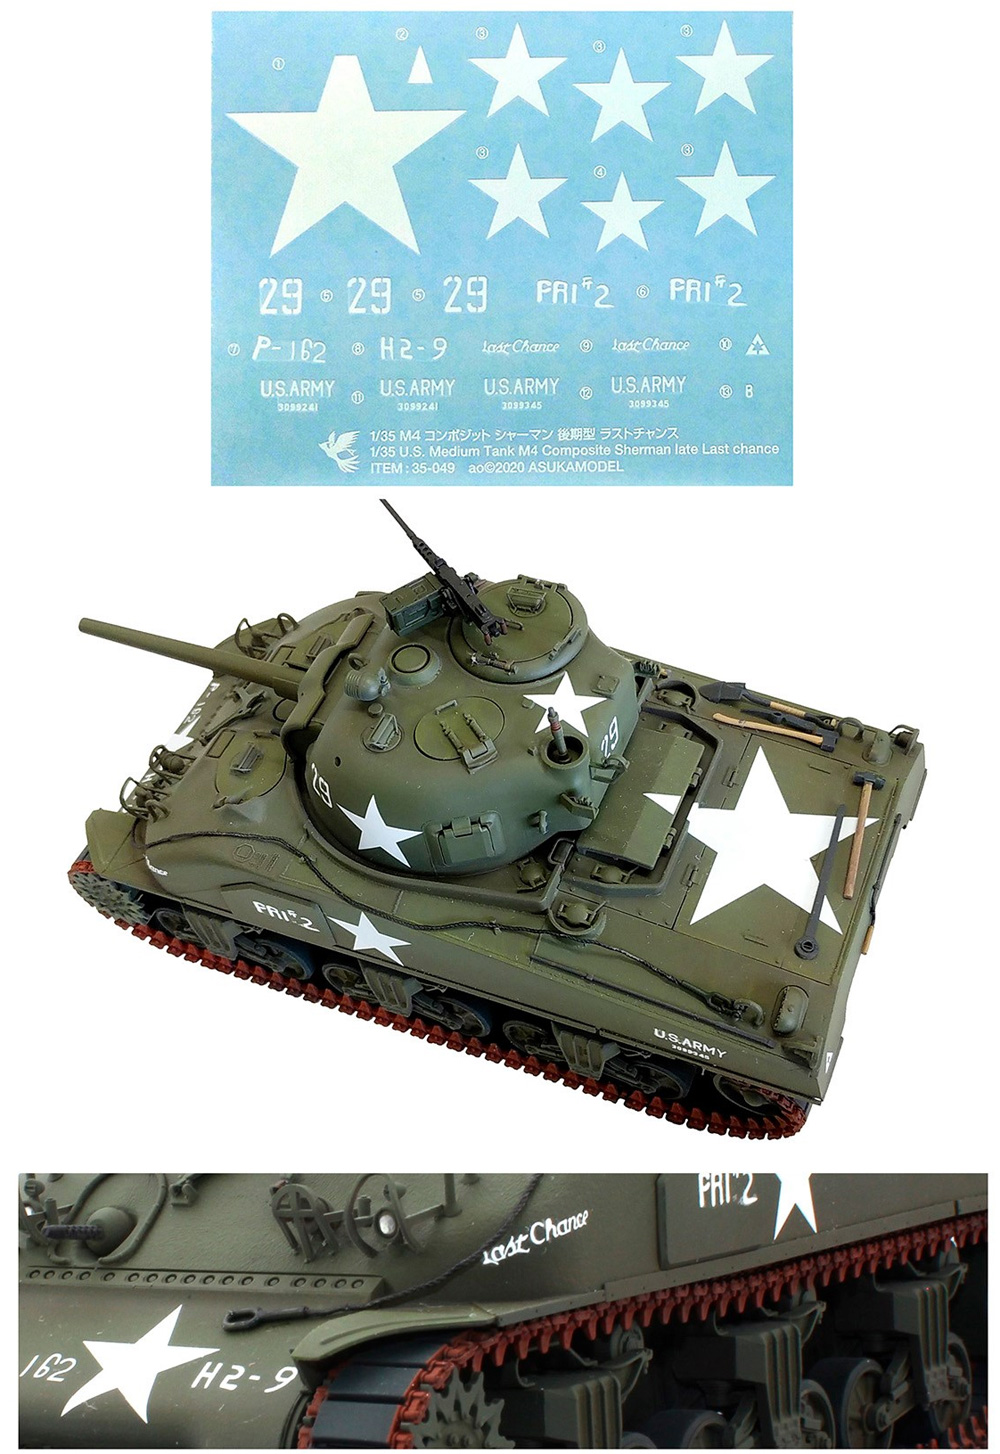 M4 コンポジット シャーマン 後期型 ラストチャンス プラモデル (アスカモデル 1/35 プラスチックモデルキット No.35-049) 商品画像_4